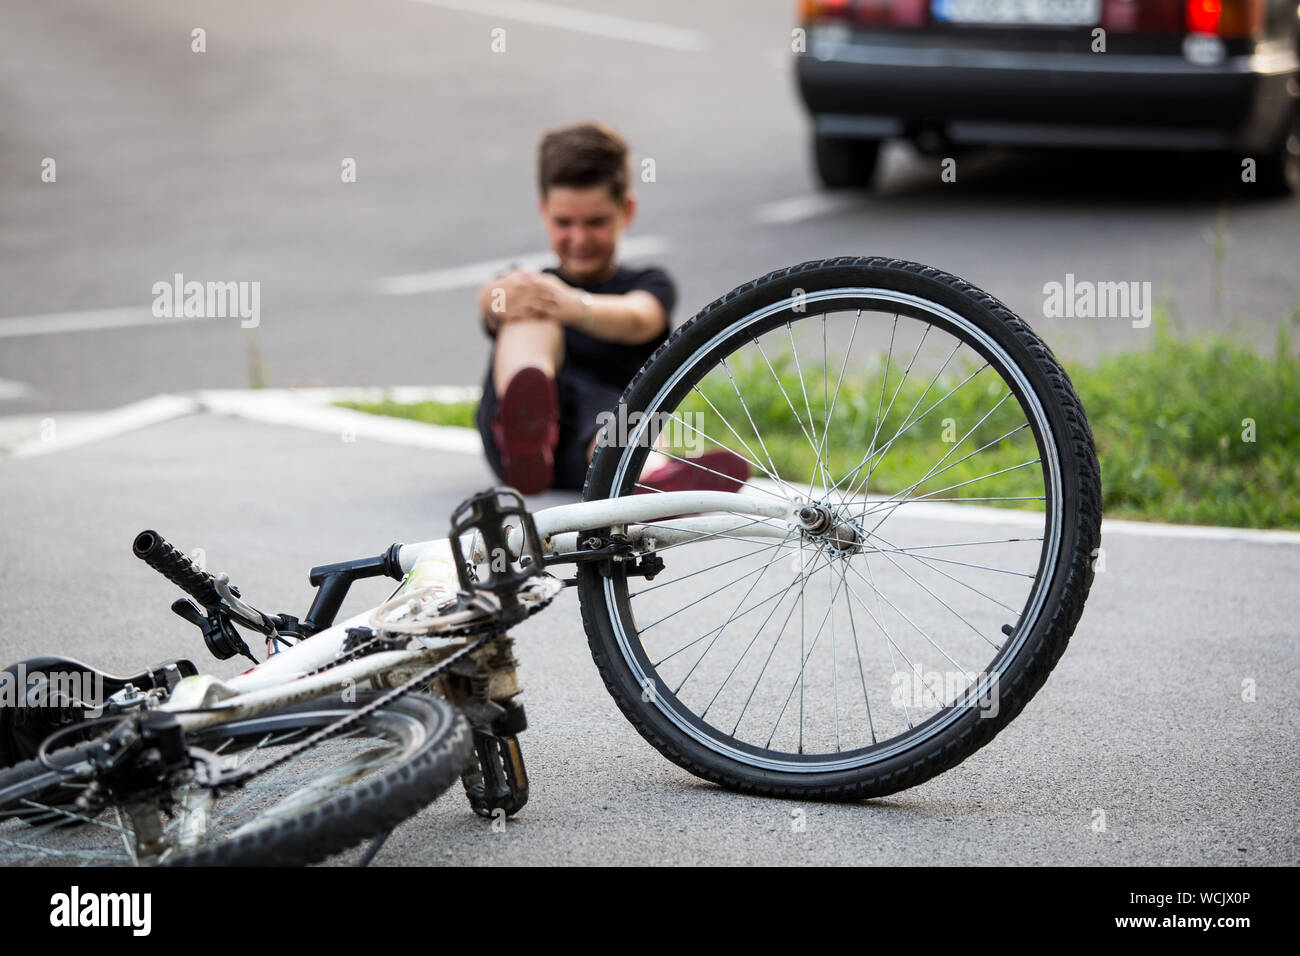 Adolescent Il y a une blessure au genou, comme les chutes de vélo tout en circonscription. Kid blessé sa jambe après tomber de son vélo Banque D'Images